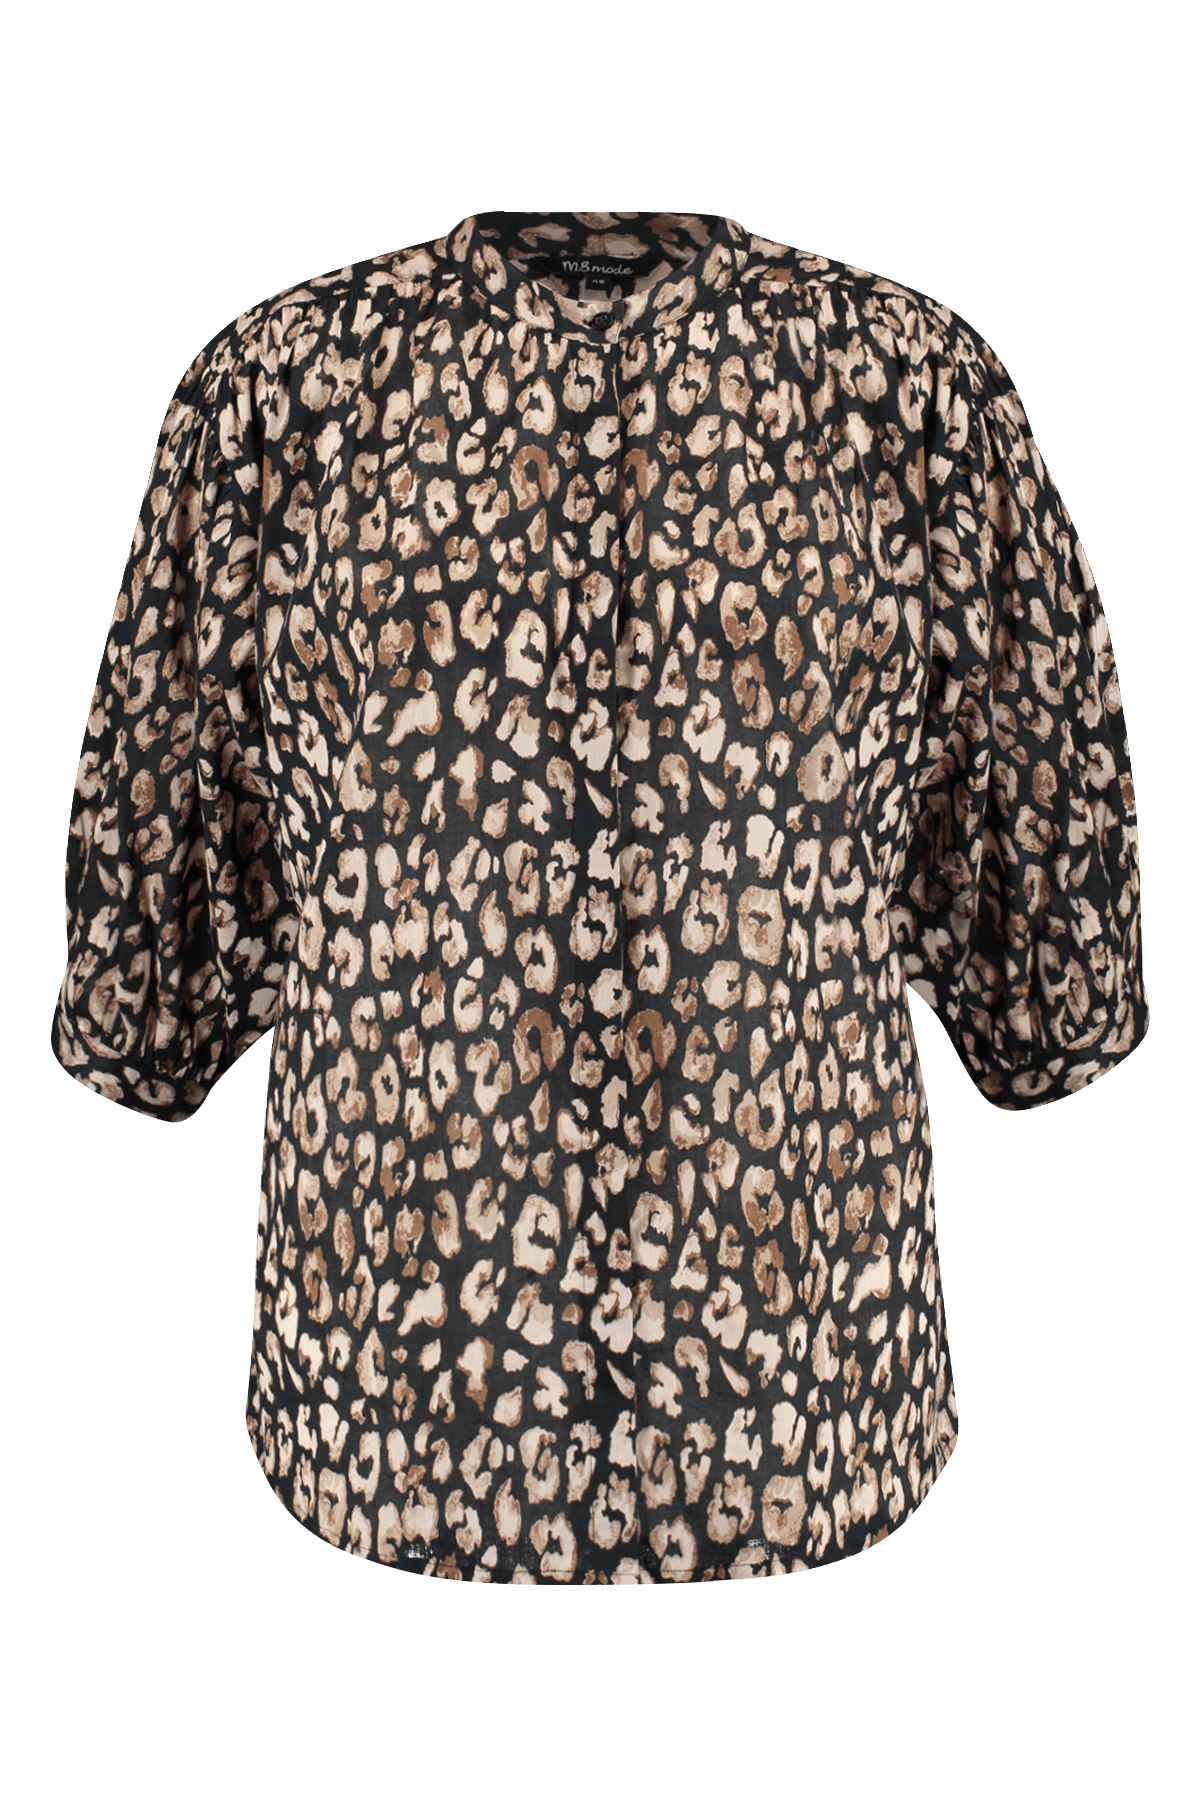 Blusa con estampado de leopardo image 1